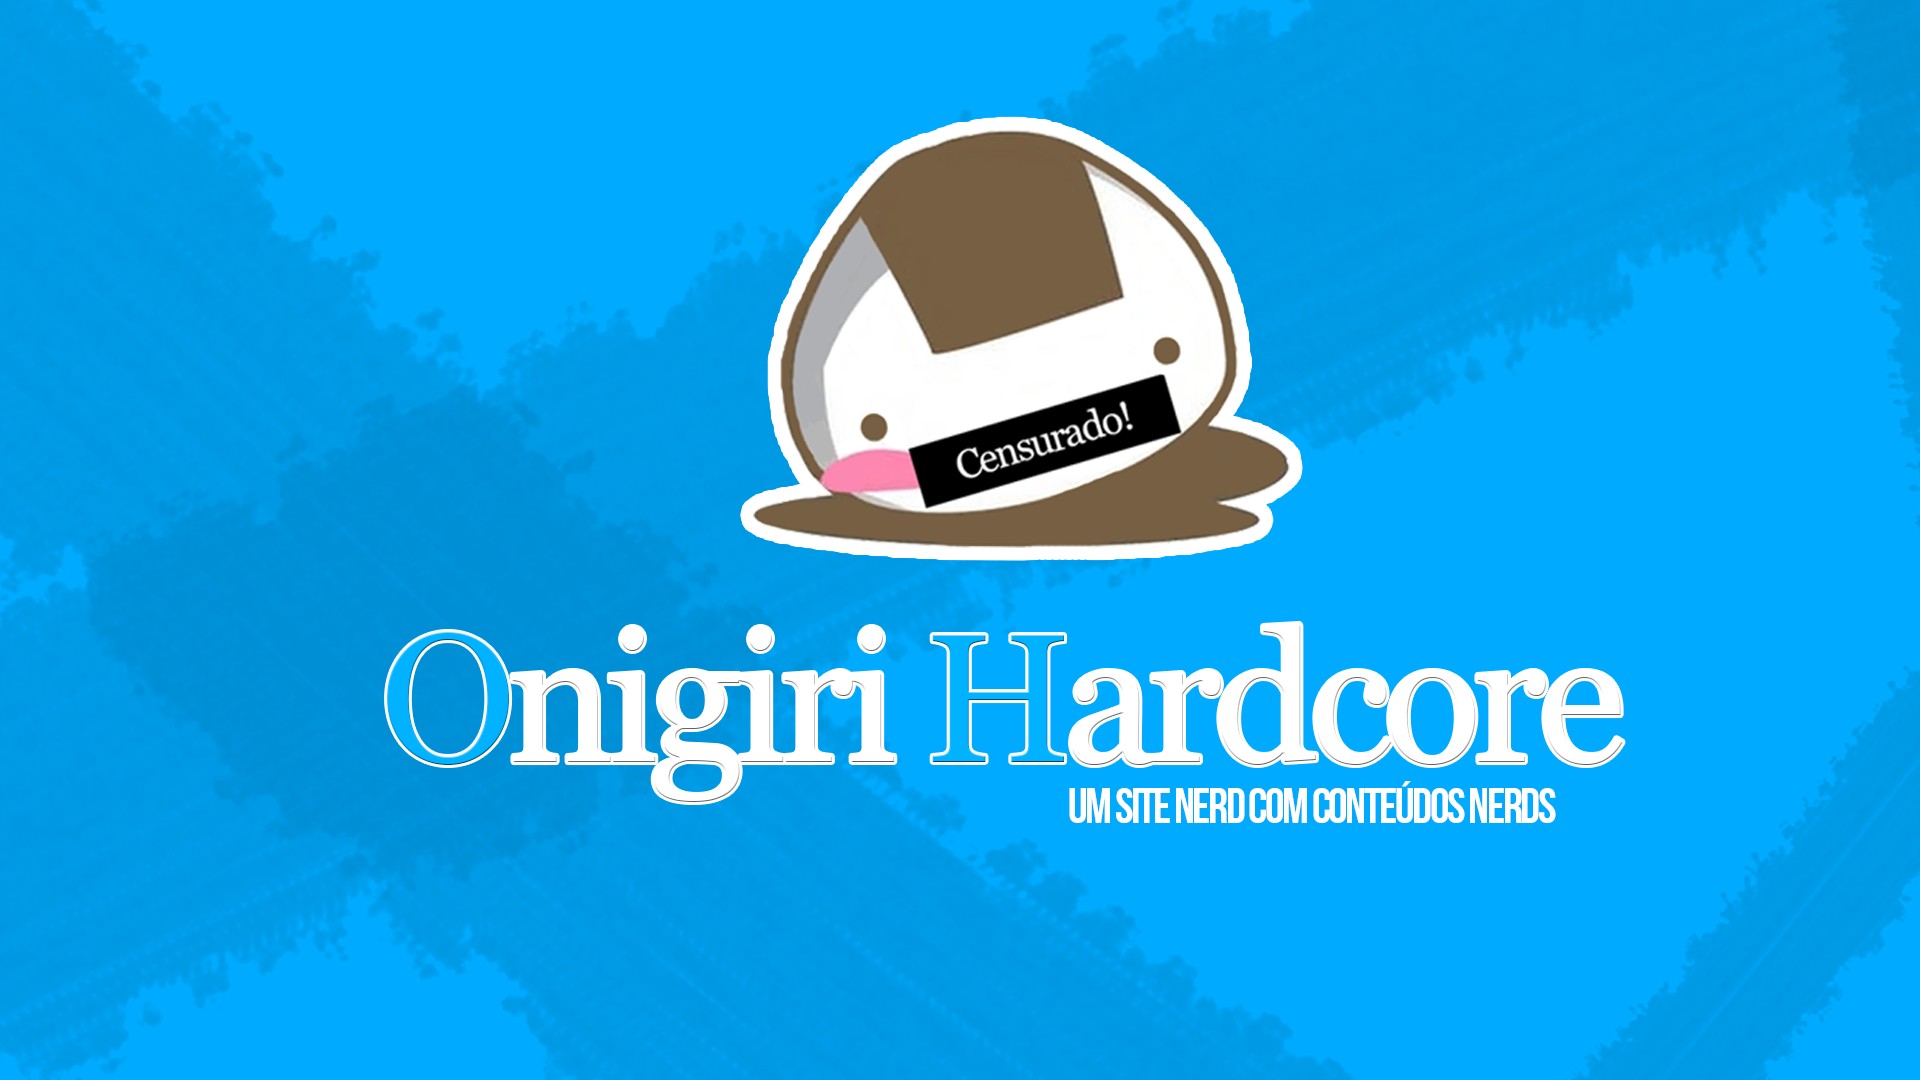 Onigiri, Hardcore, Onigiri Hardcore Wallpaper